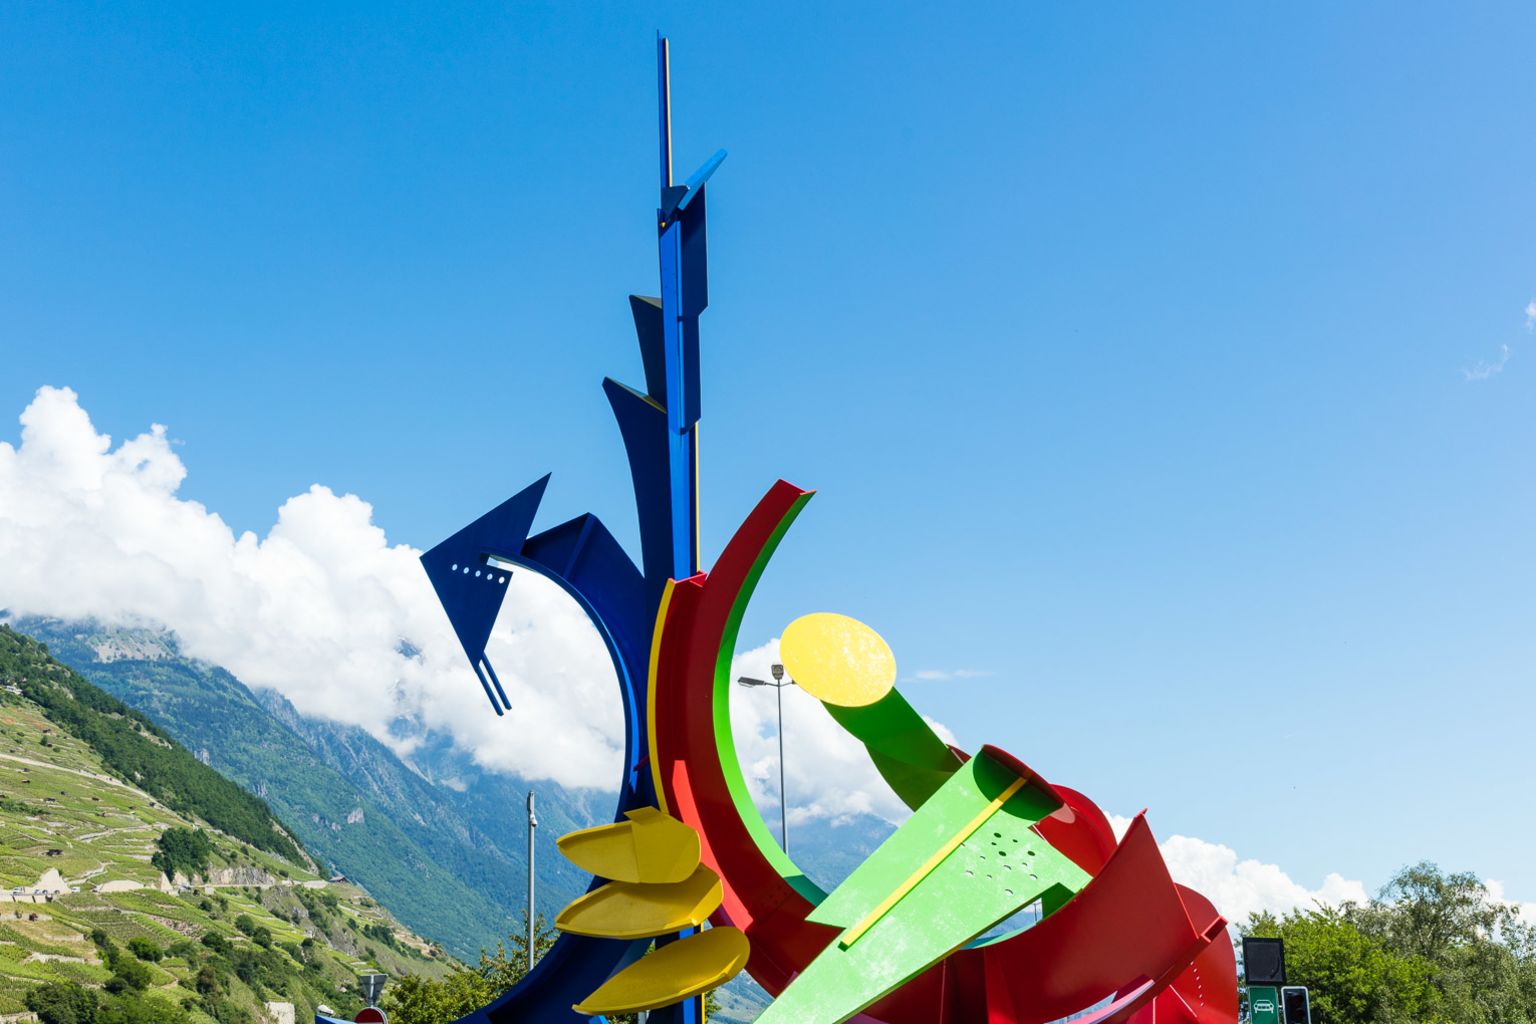 Entdecken Sie zu Fuss oder mit dem Auto die Skulpturen und Kunstwerke, die in der Stadt Martigny 17 Kreisel schmücken, Wallis, Schweiz